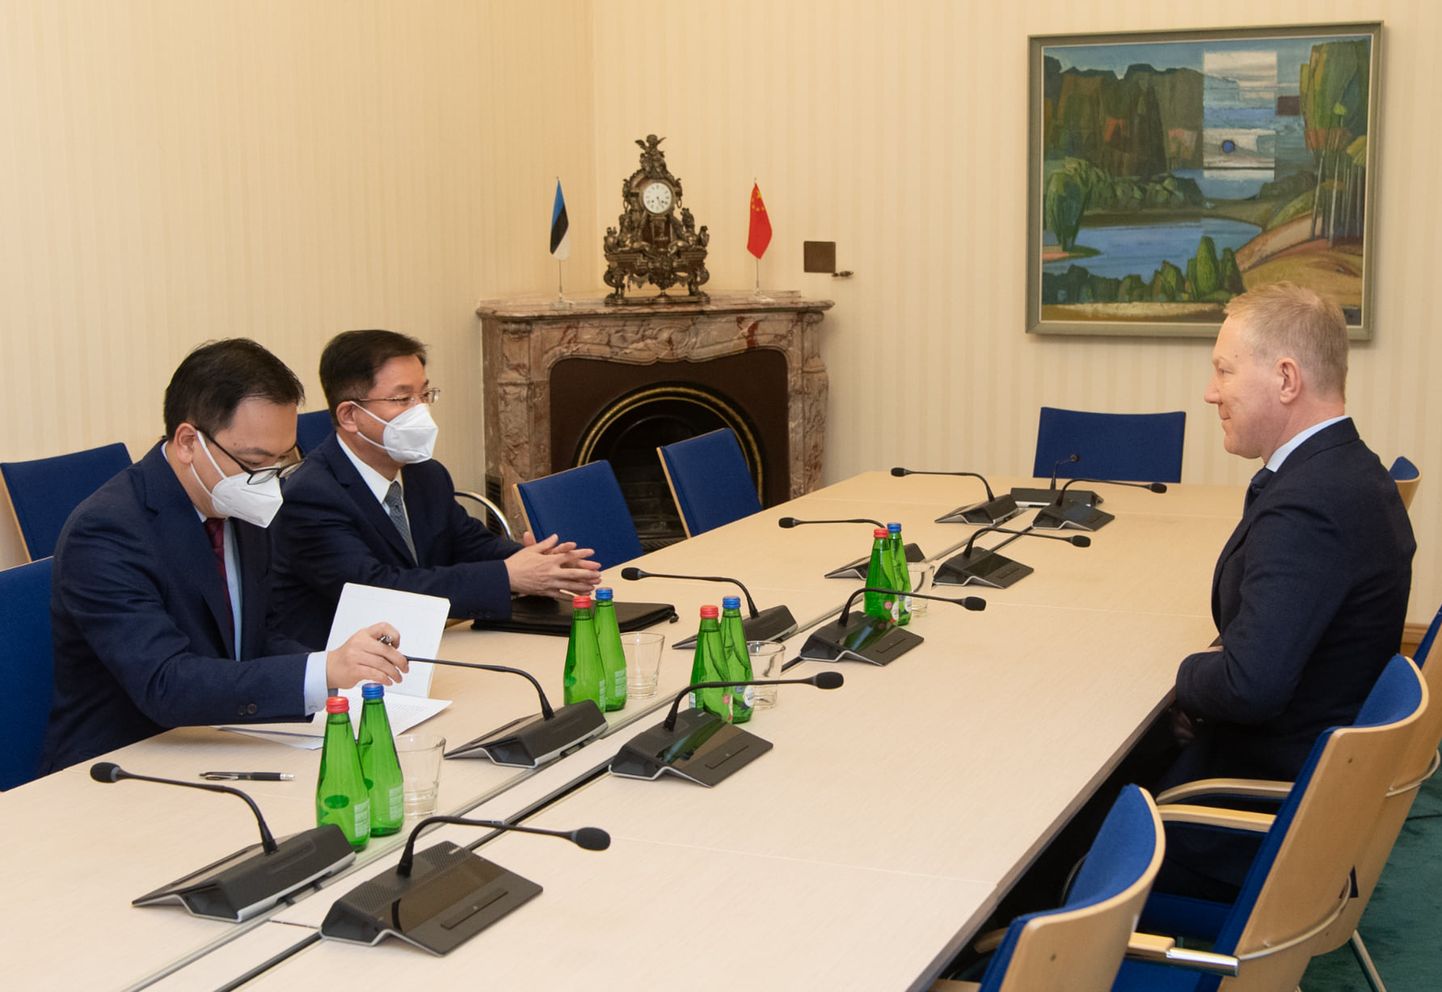 Председатель комиссии по иностранным делам Рийгикогу Марко Михкельсон встретился с послом Китая в Эстонии Ли Чао.